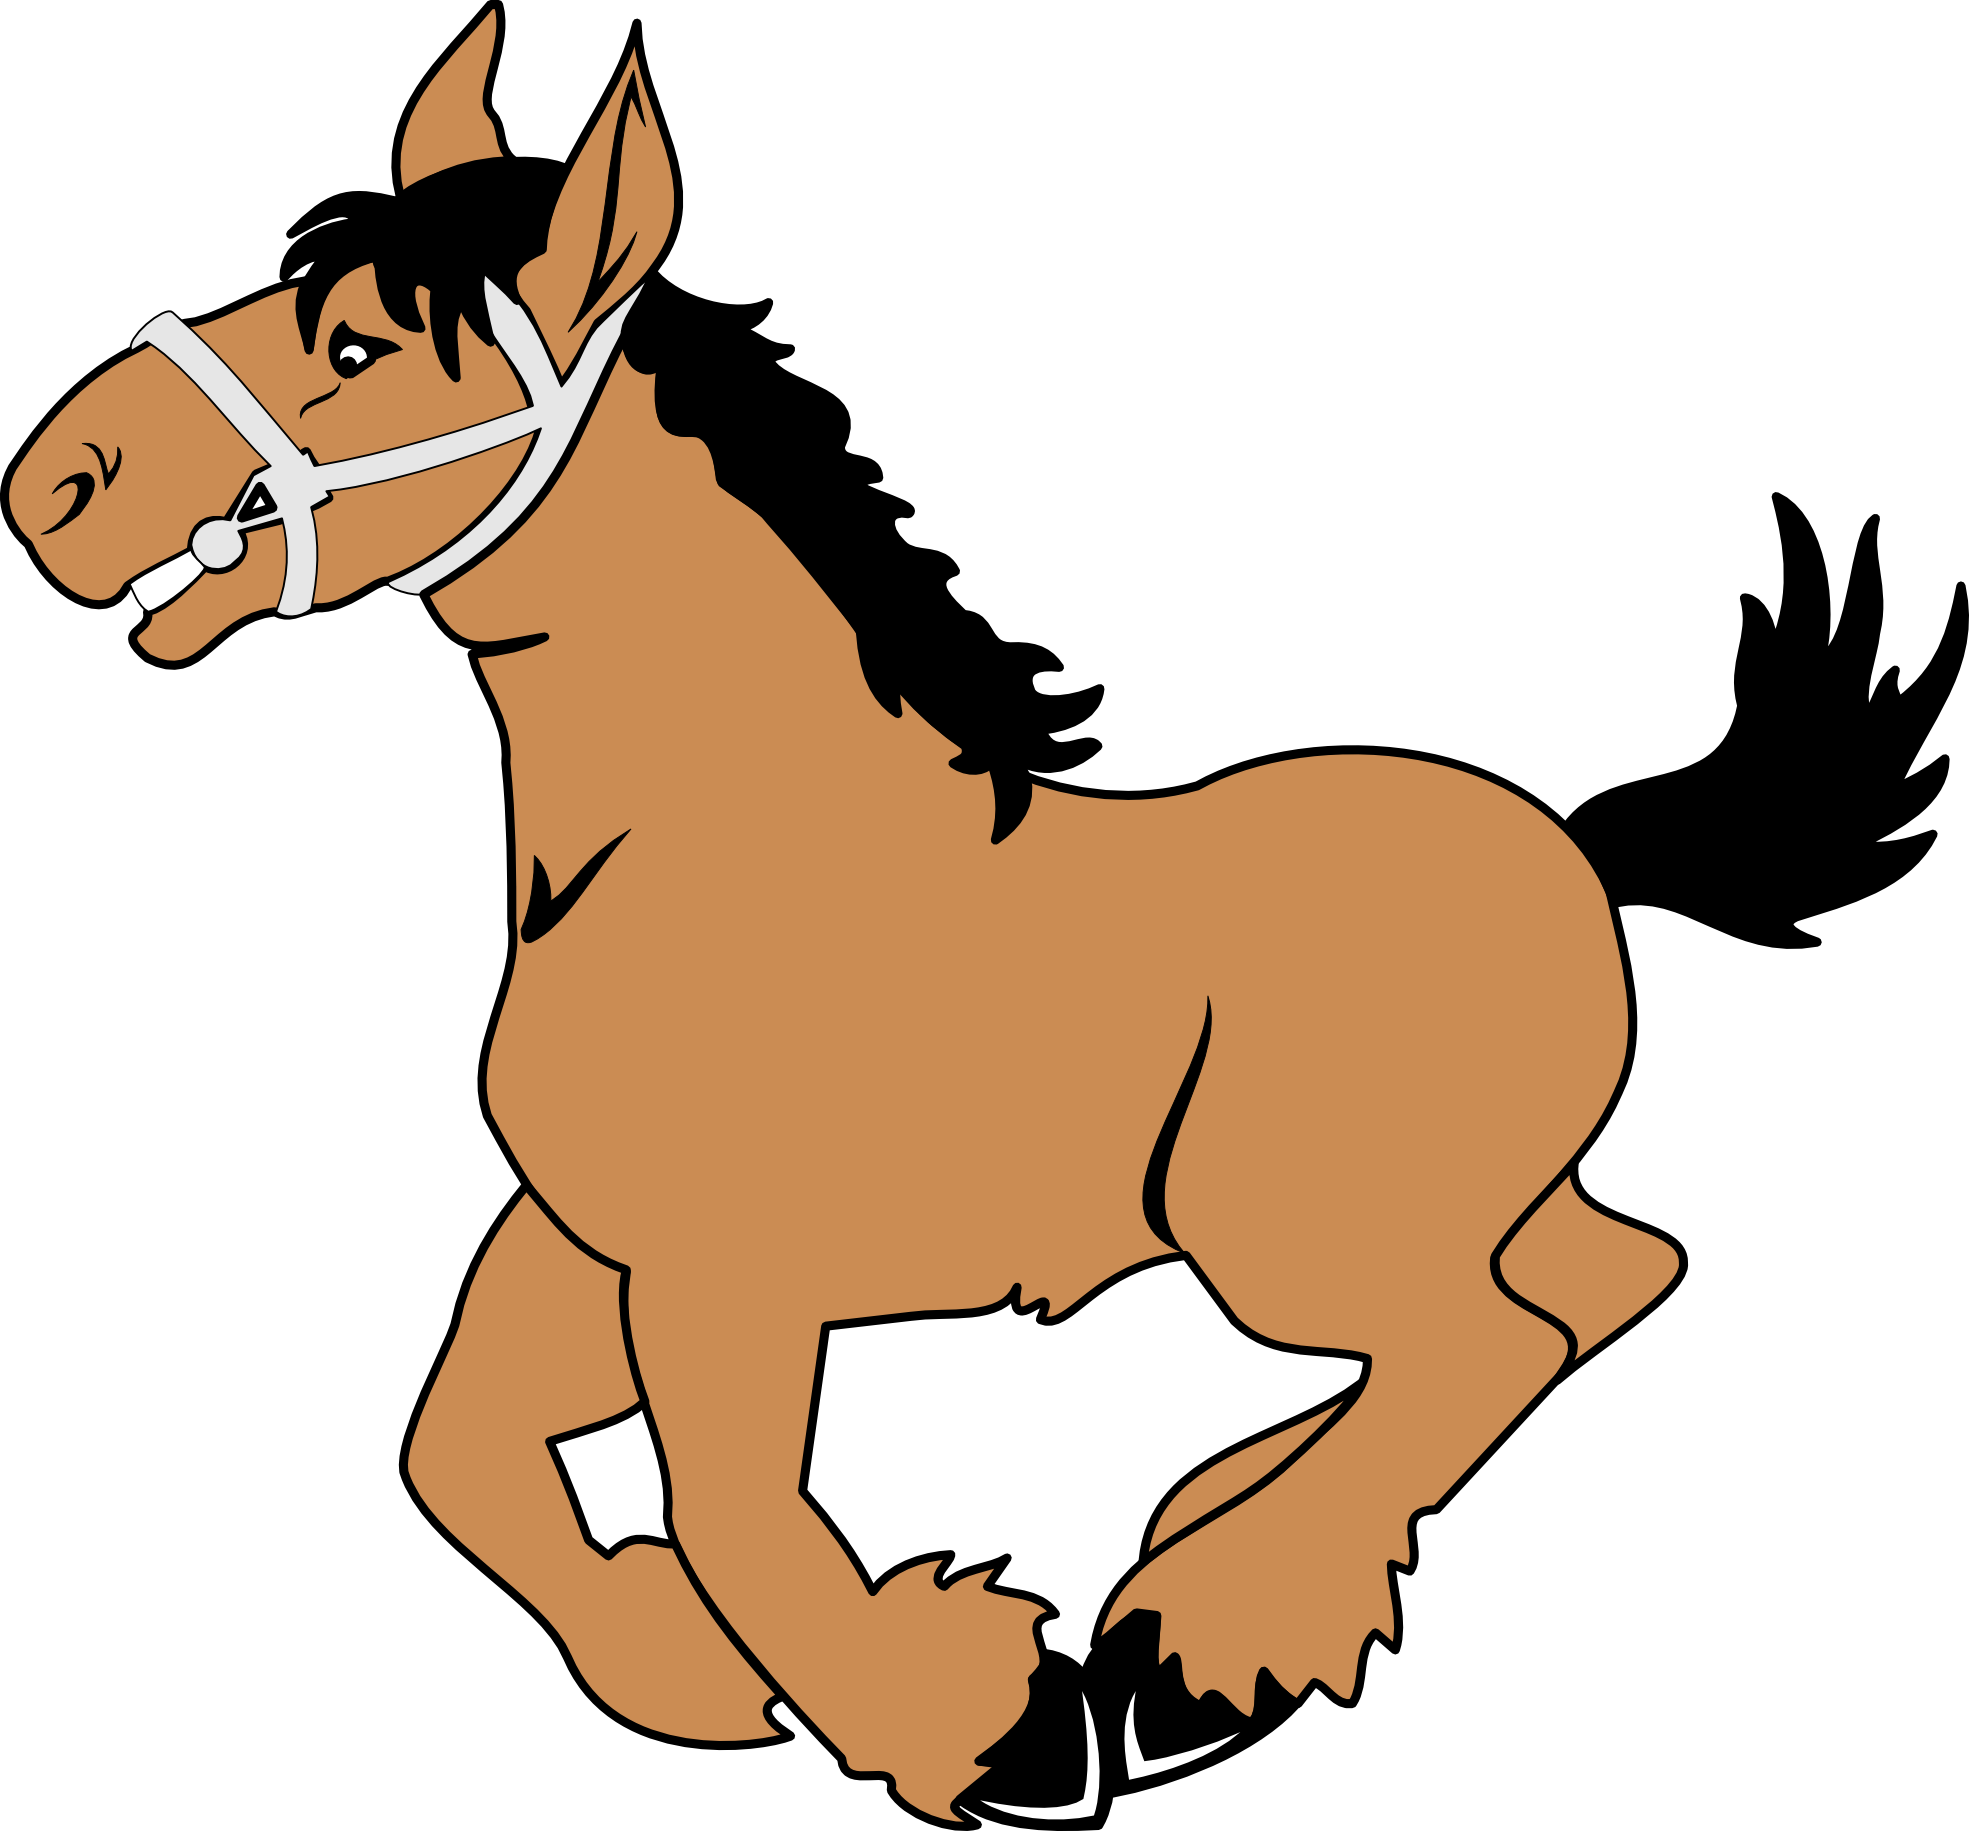 Smores clipart animated. Horse clip art border